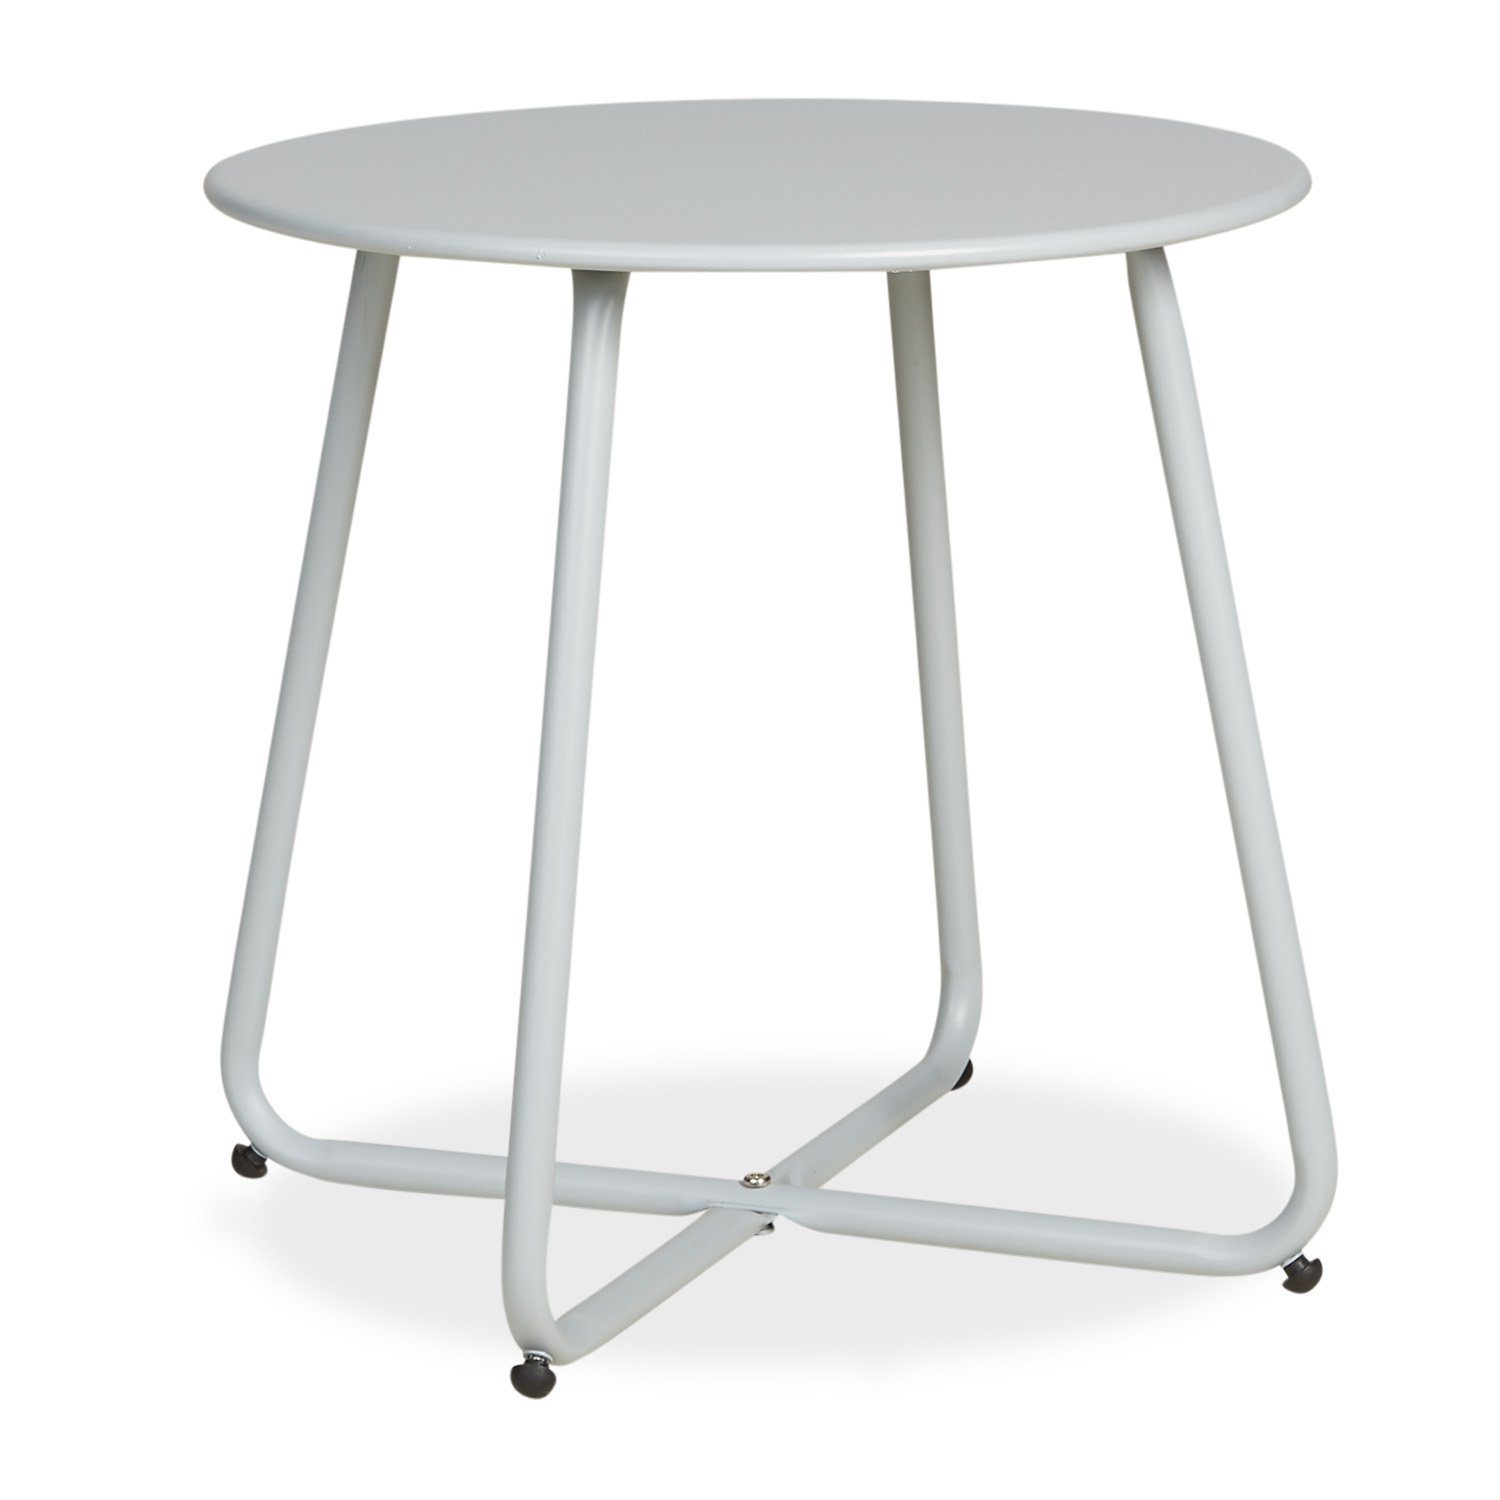 Homestyle4u Beistelltisch Gartentisch Rund Metall Tisch Kaffeetisch (kein Set) grau | grau | grau